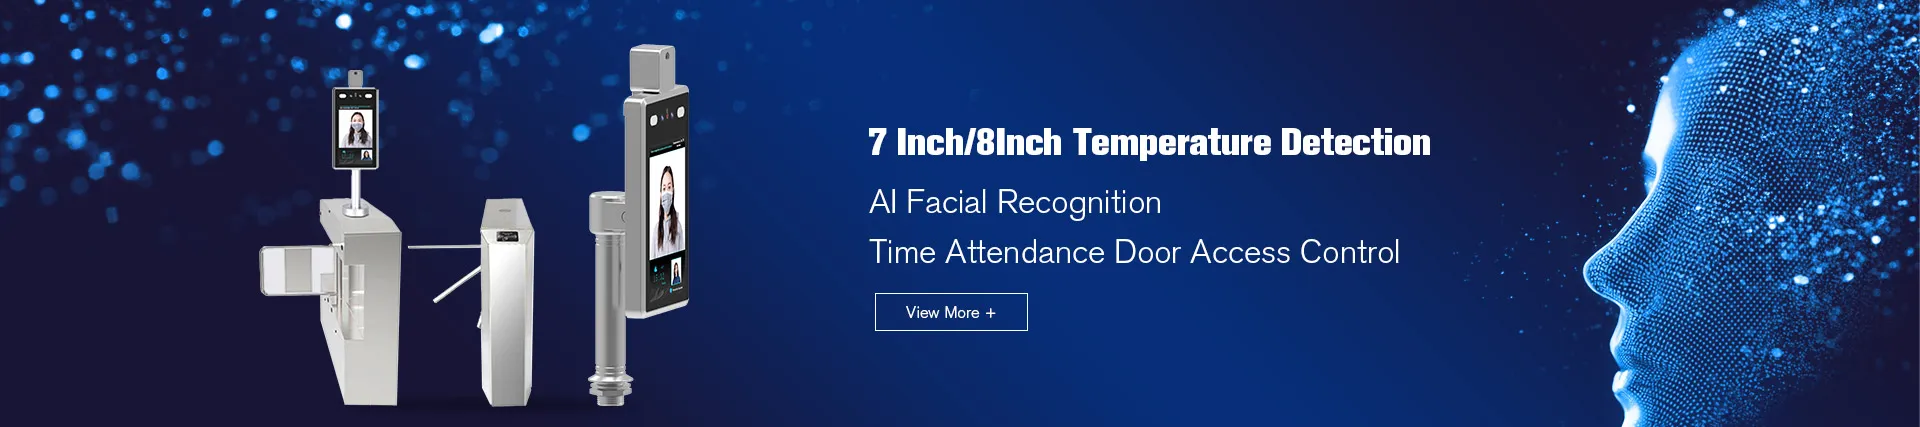 Dispositivo de reconocimiento facial de detección de temperatura AI